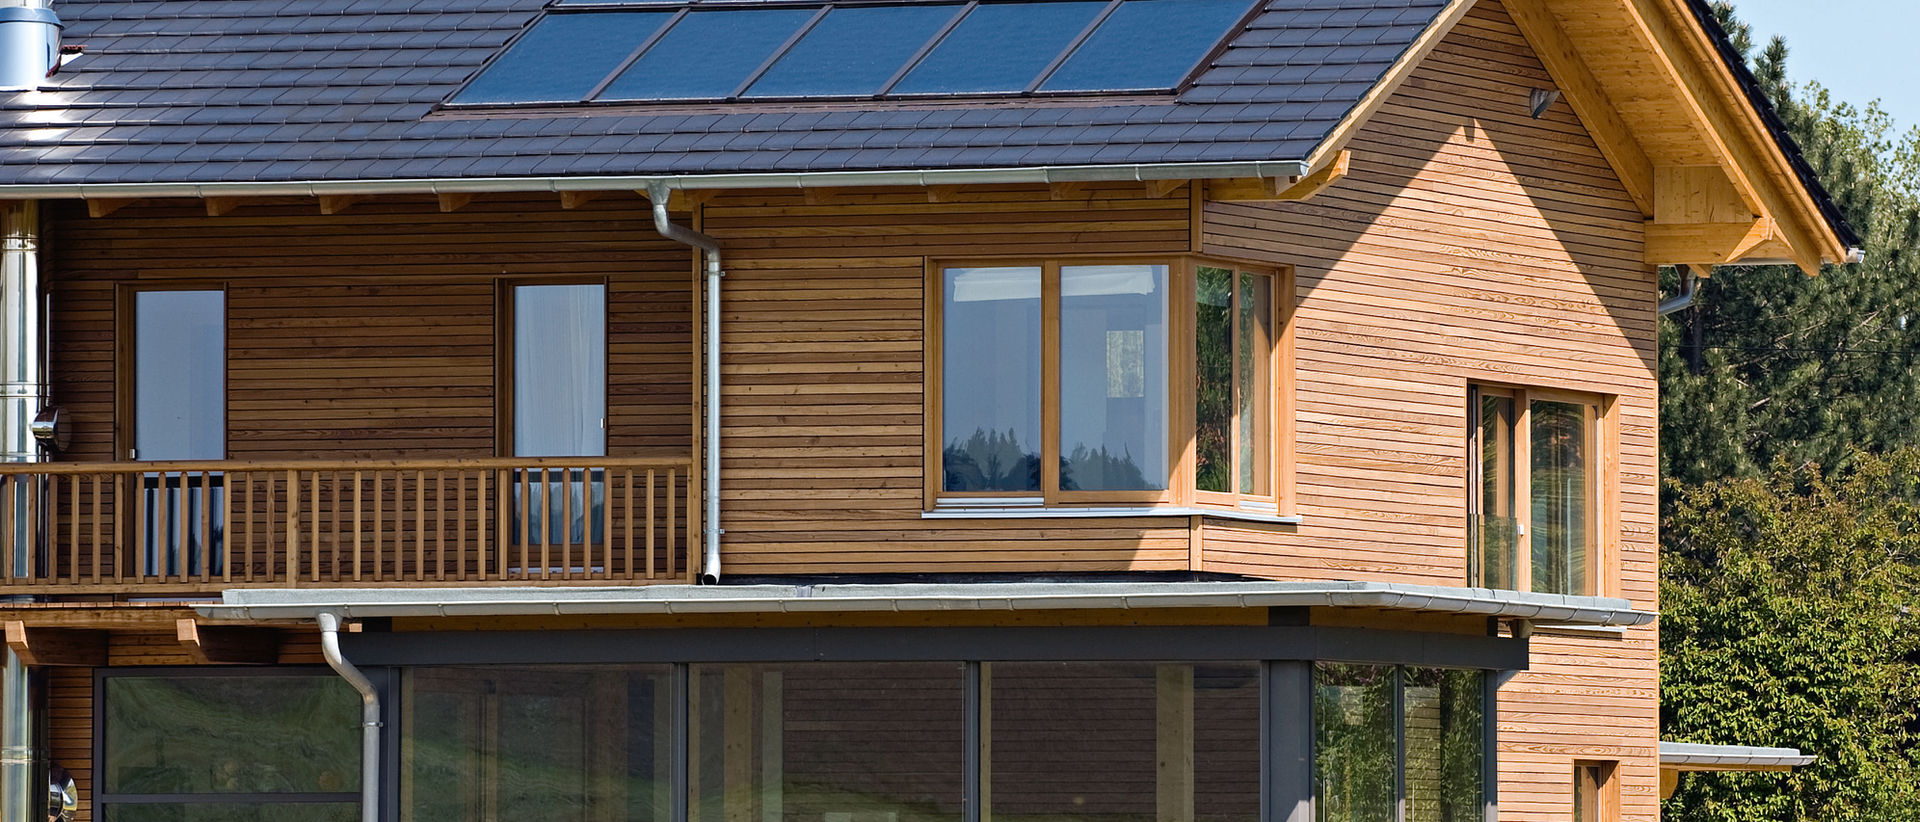 Holzhaus mit Solaranlage am Feldrand